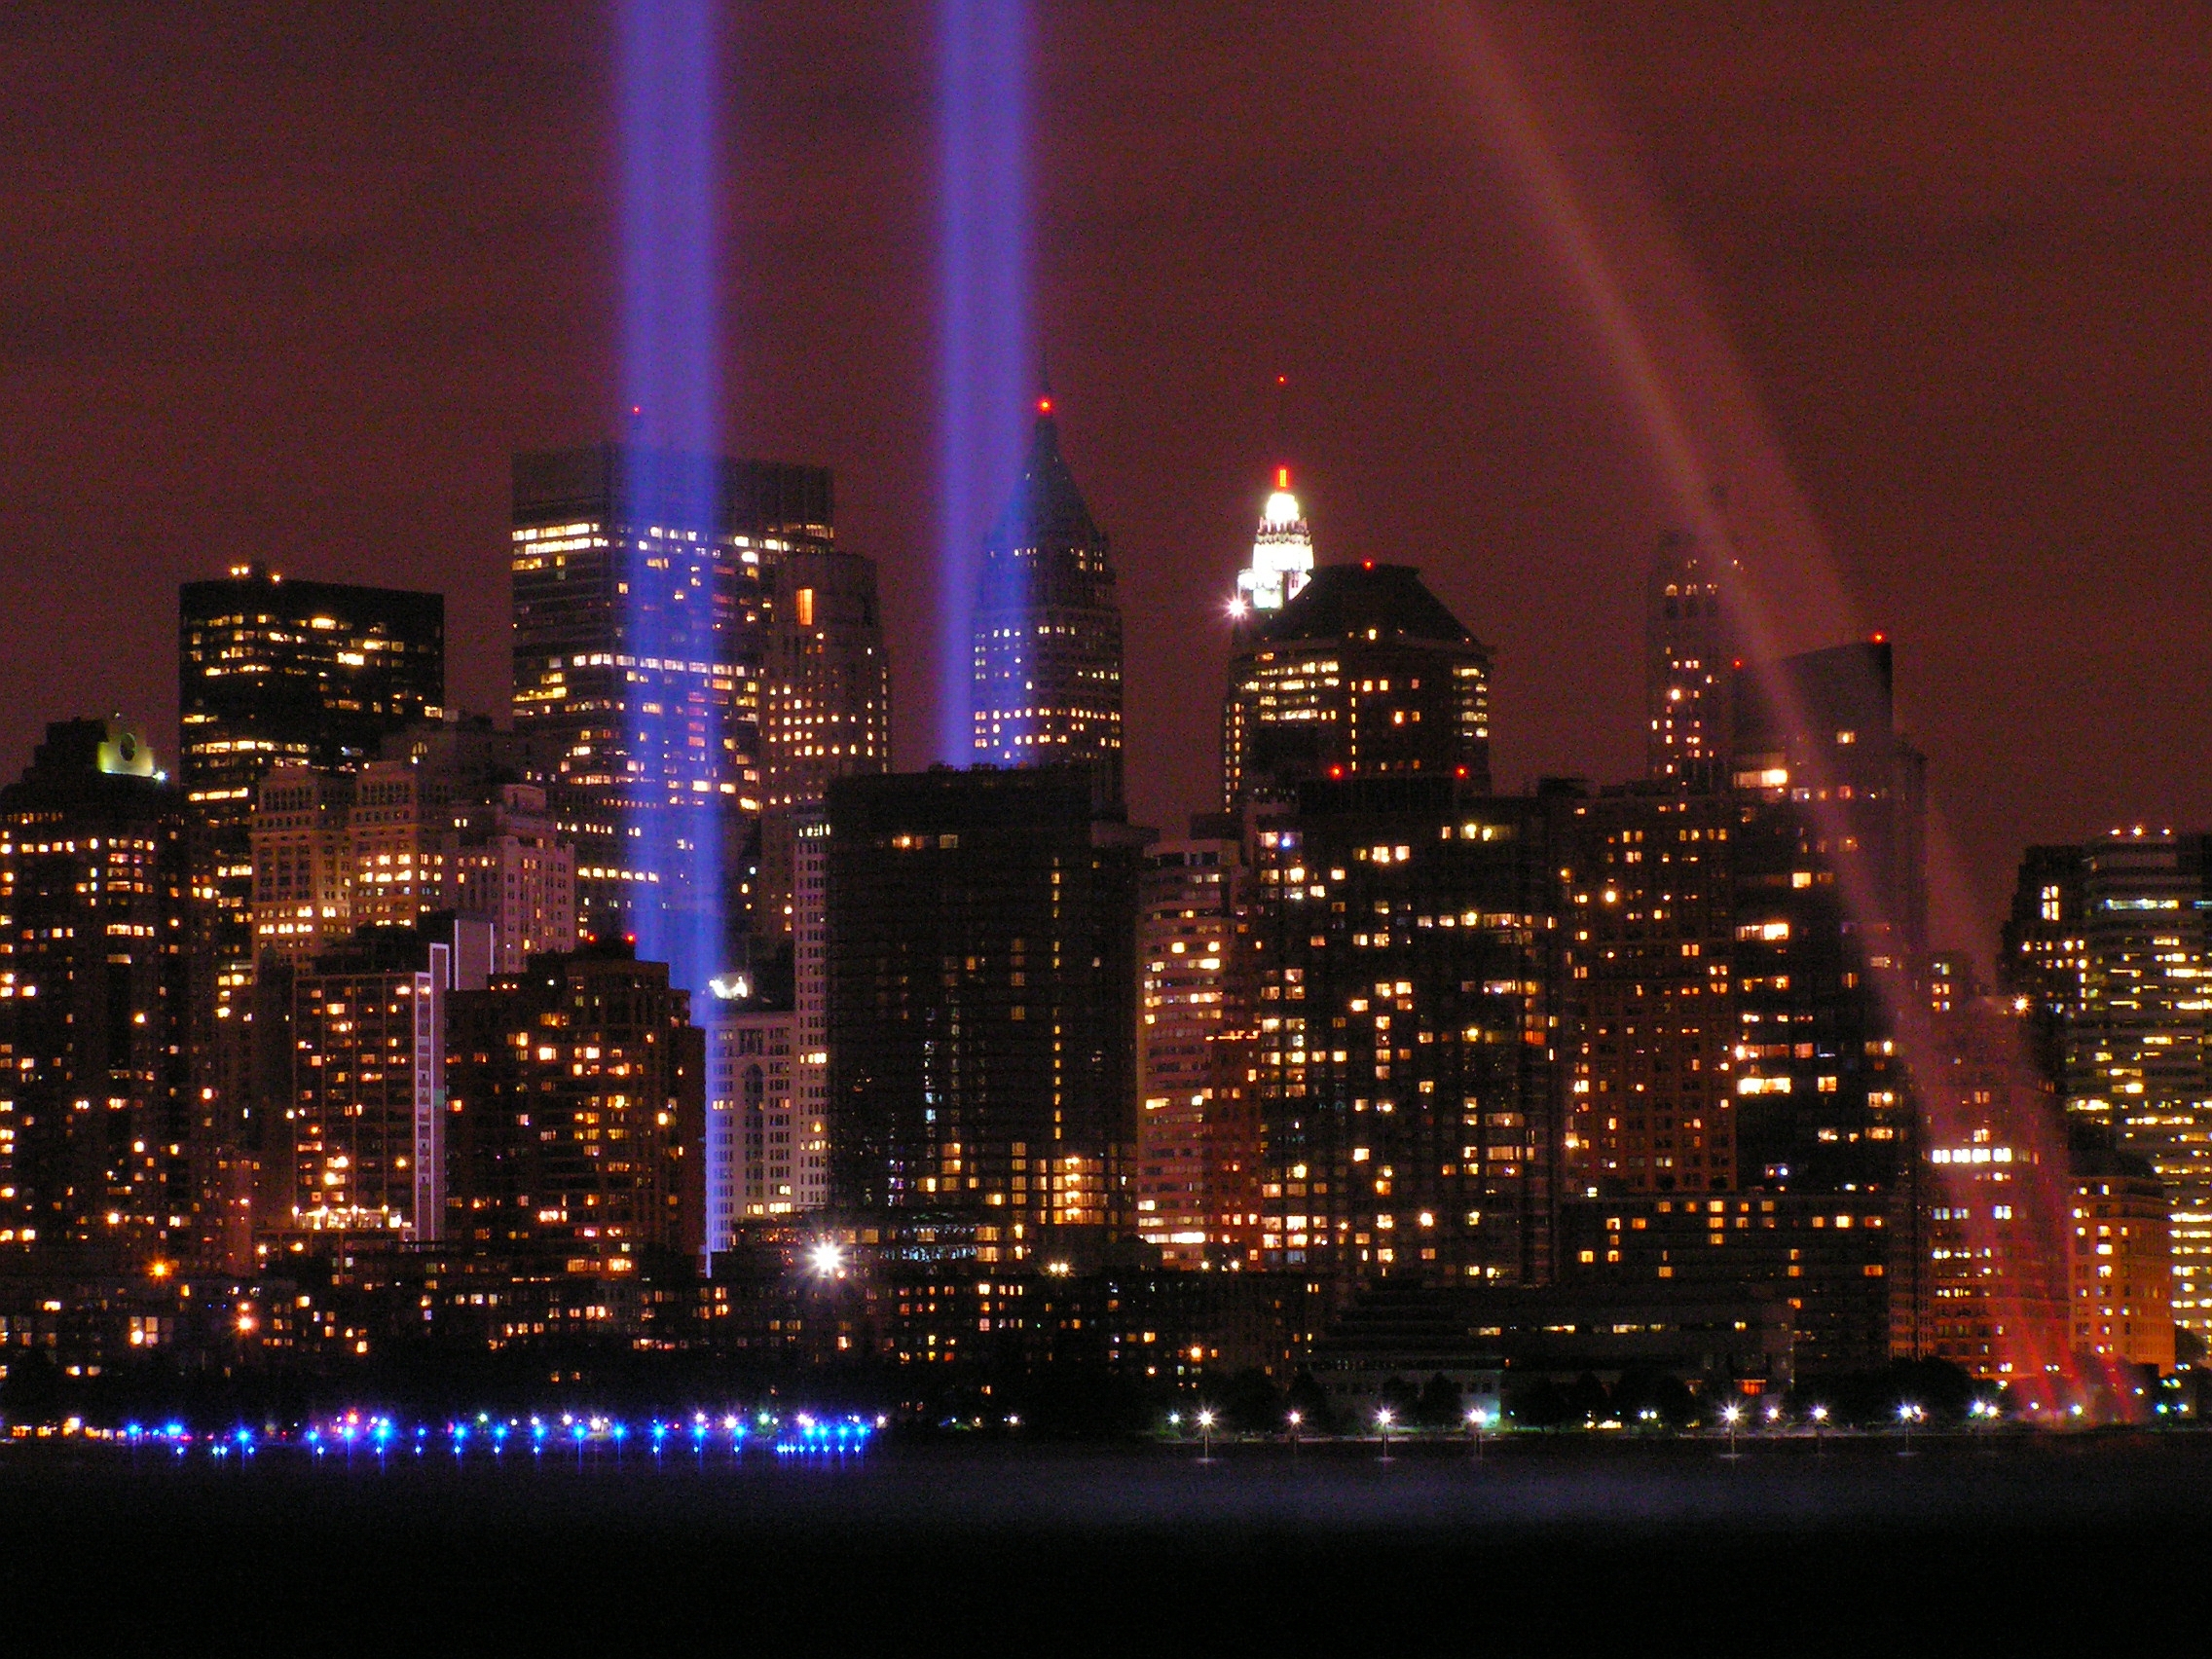 9/11-herdenking in New York met lichtbundels op de plaats waar de Twin Towers stonden